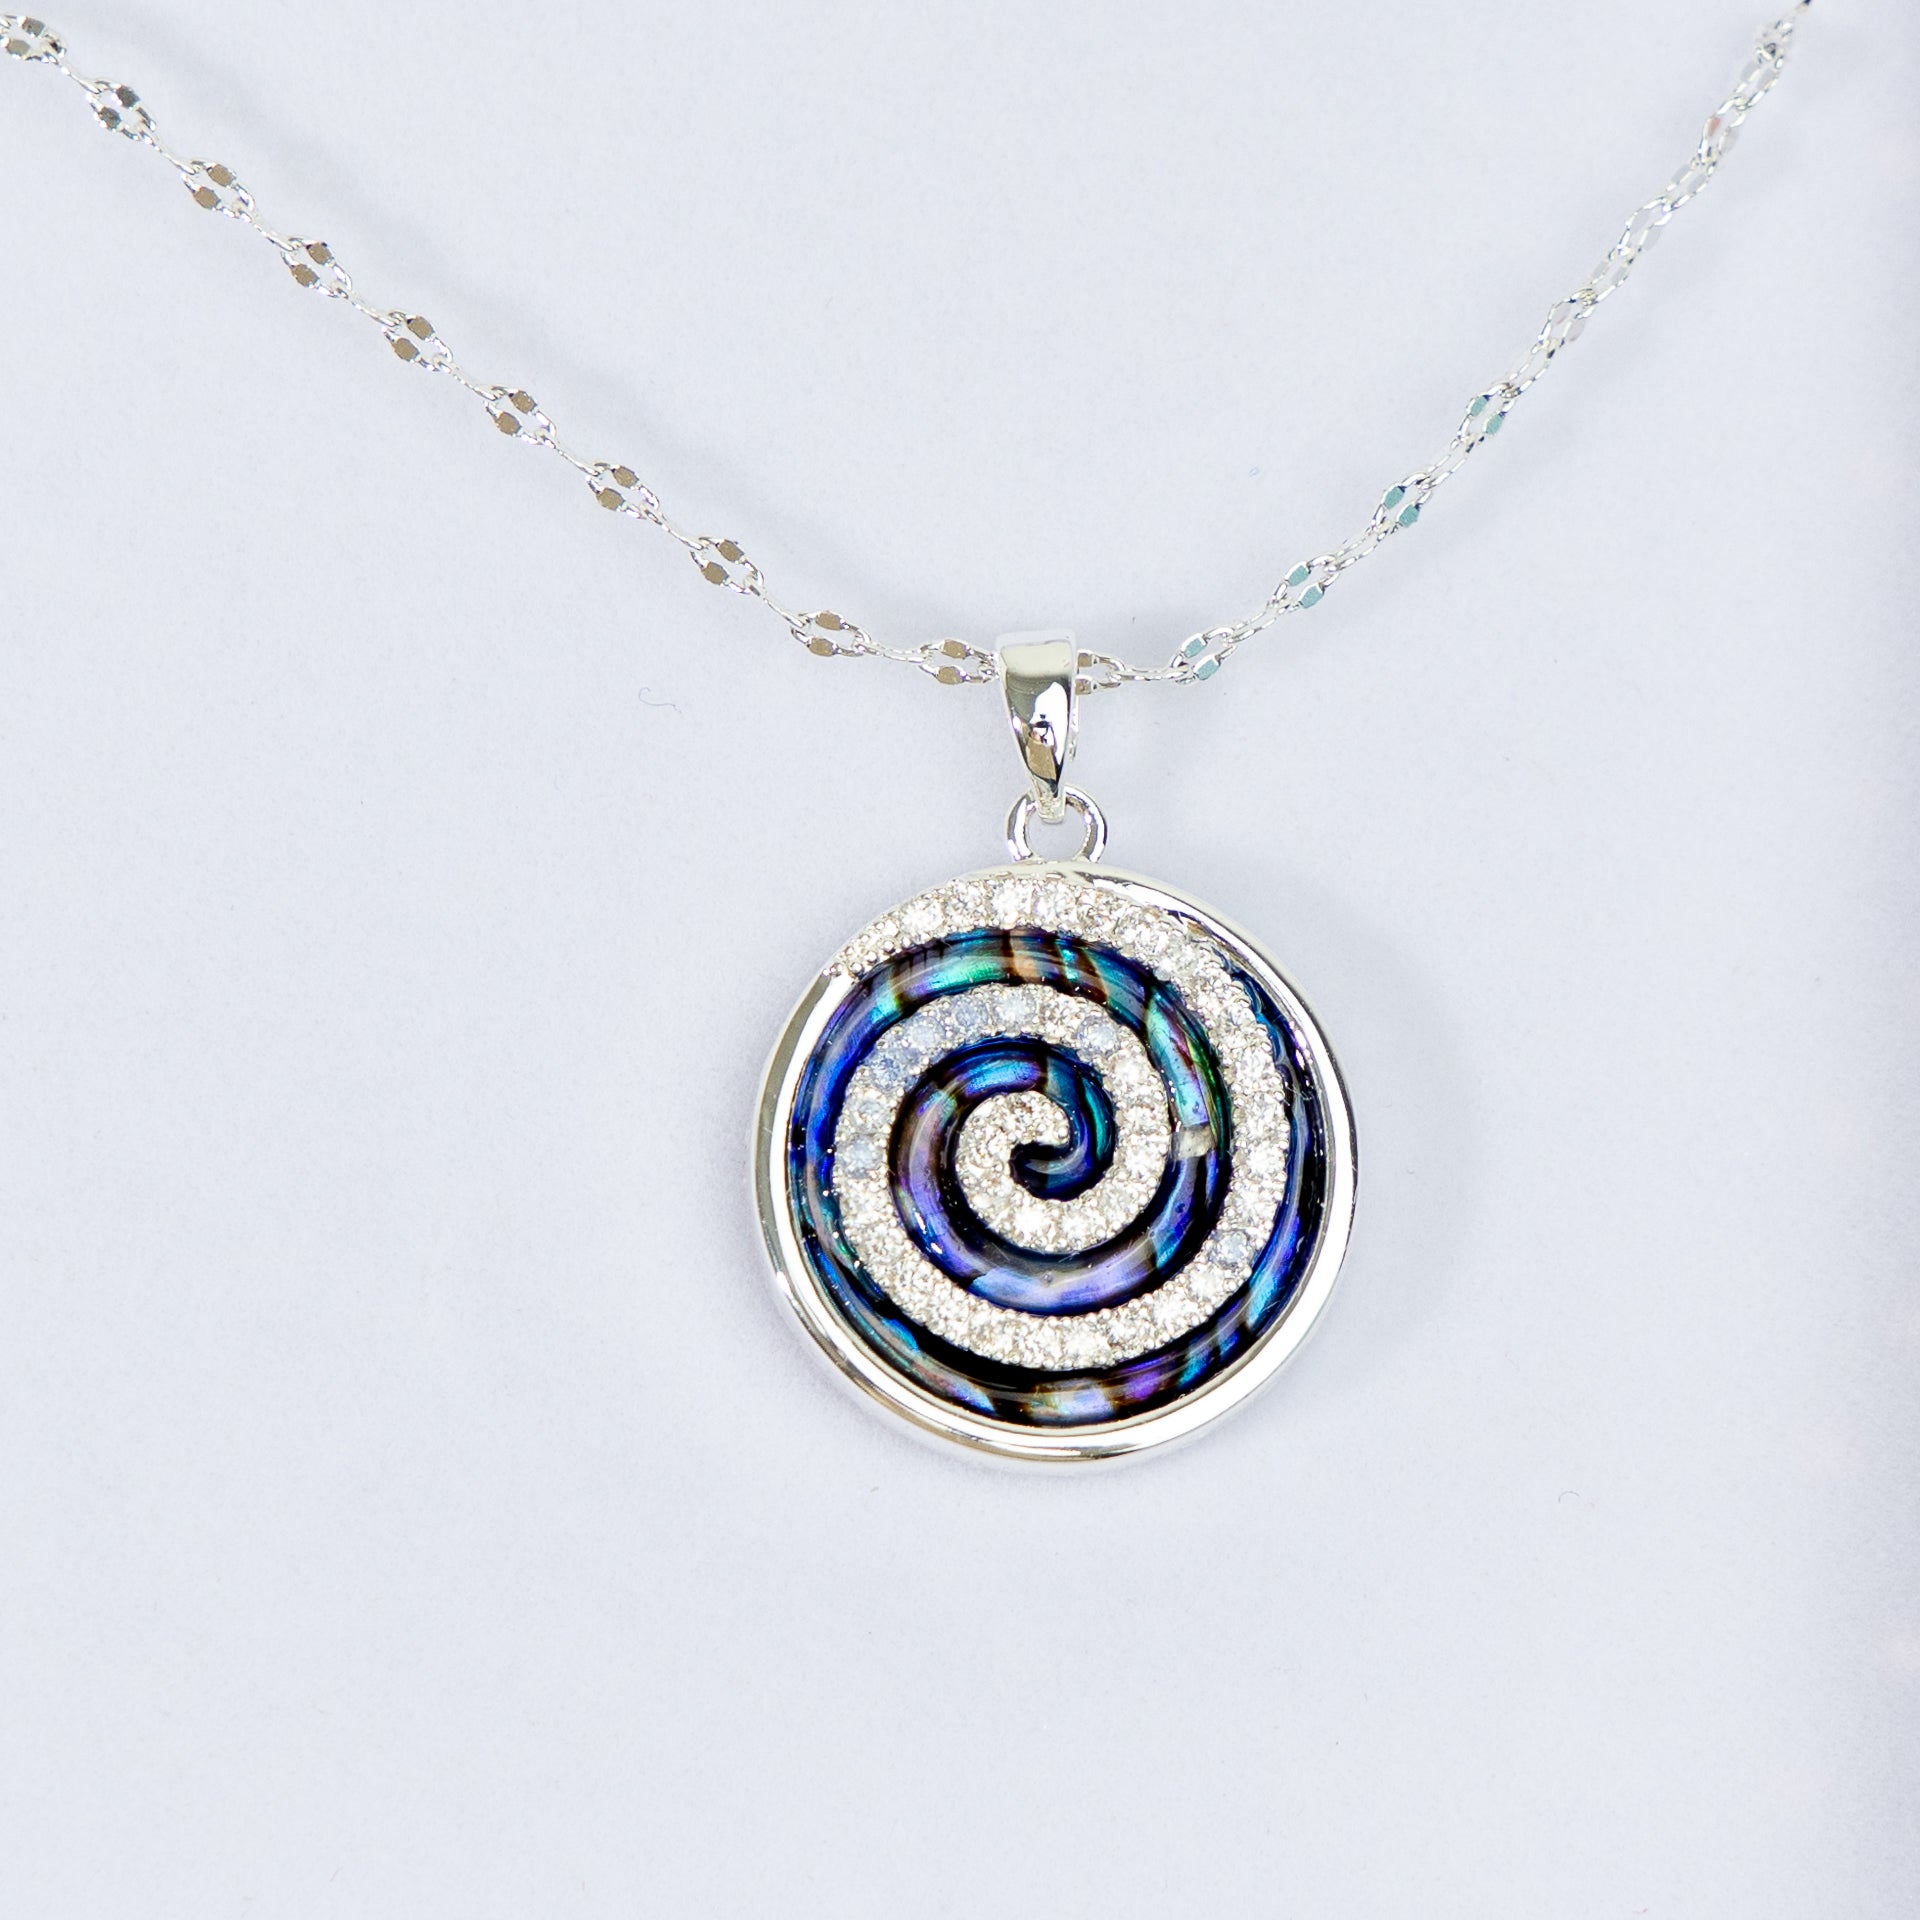 Pāua Shell Swirl Necklace